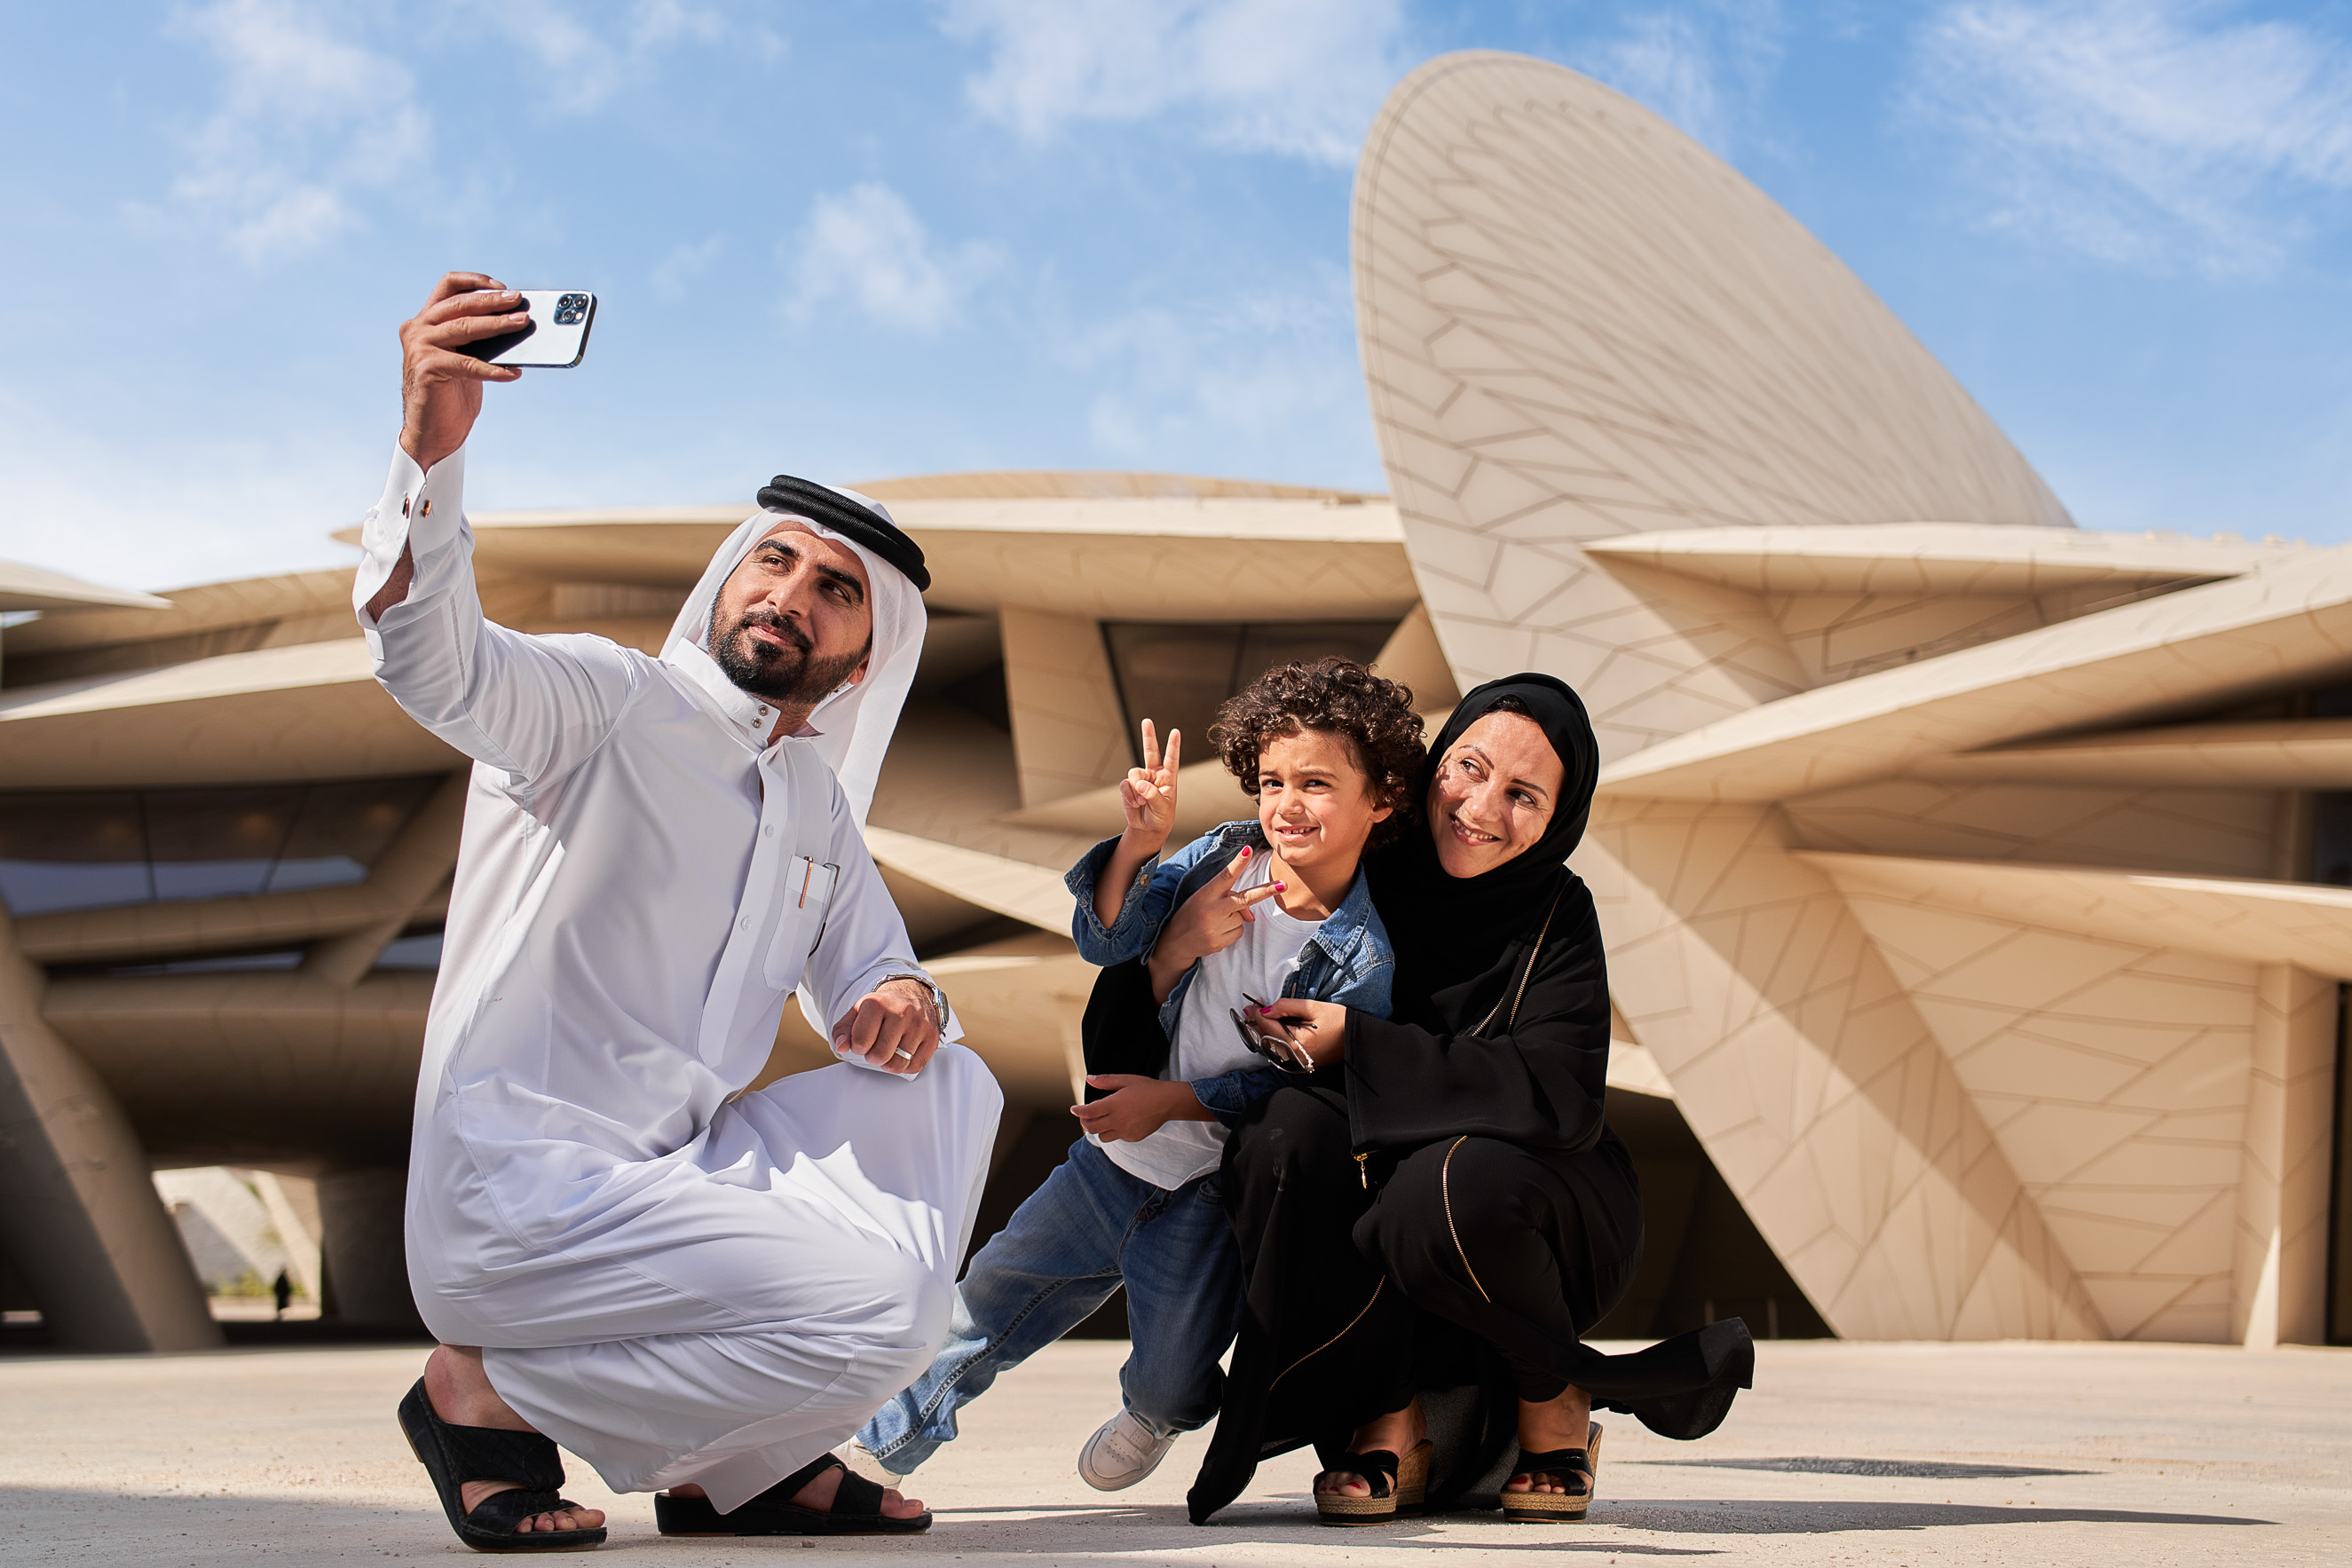 Katar’daki kısa molanız sırasında yapılacak en iyi 5 şehir aktivitesi